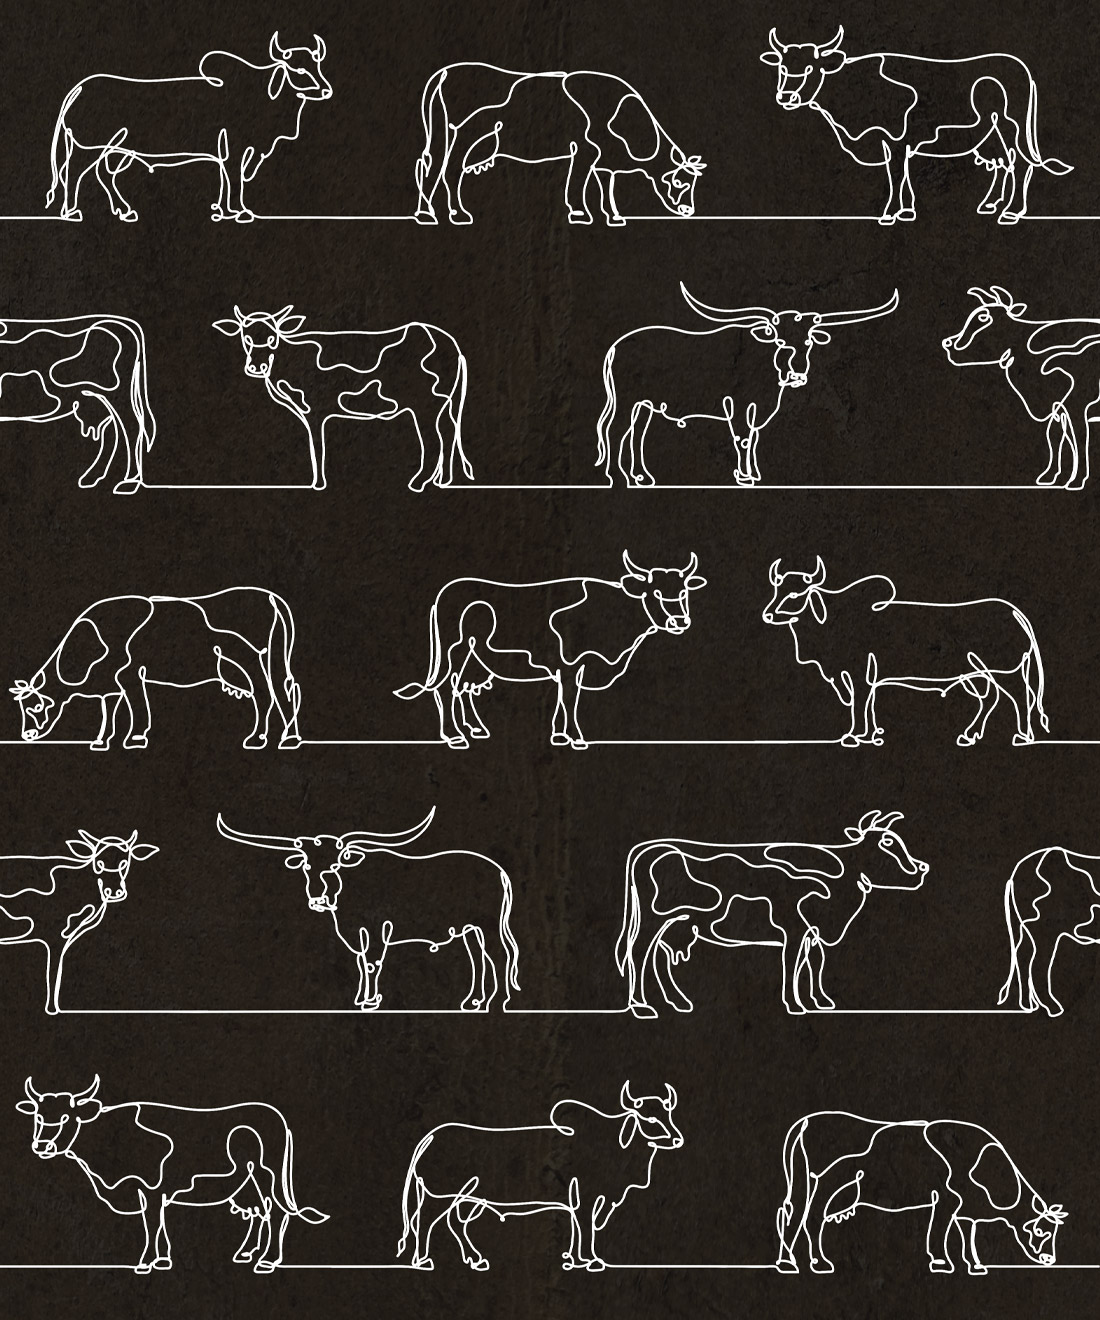 The Herd Wallpapers